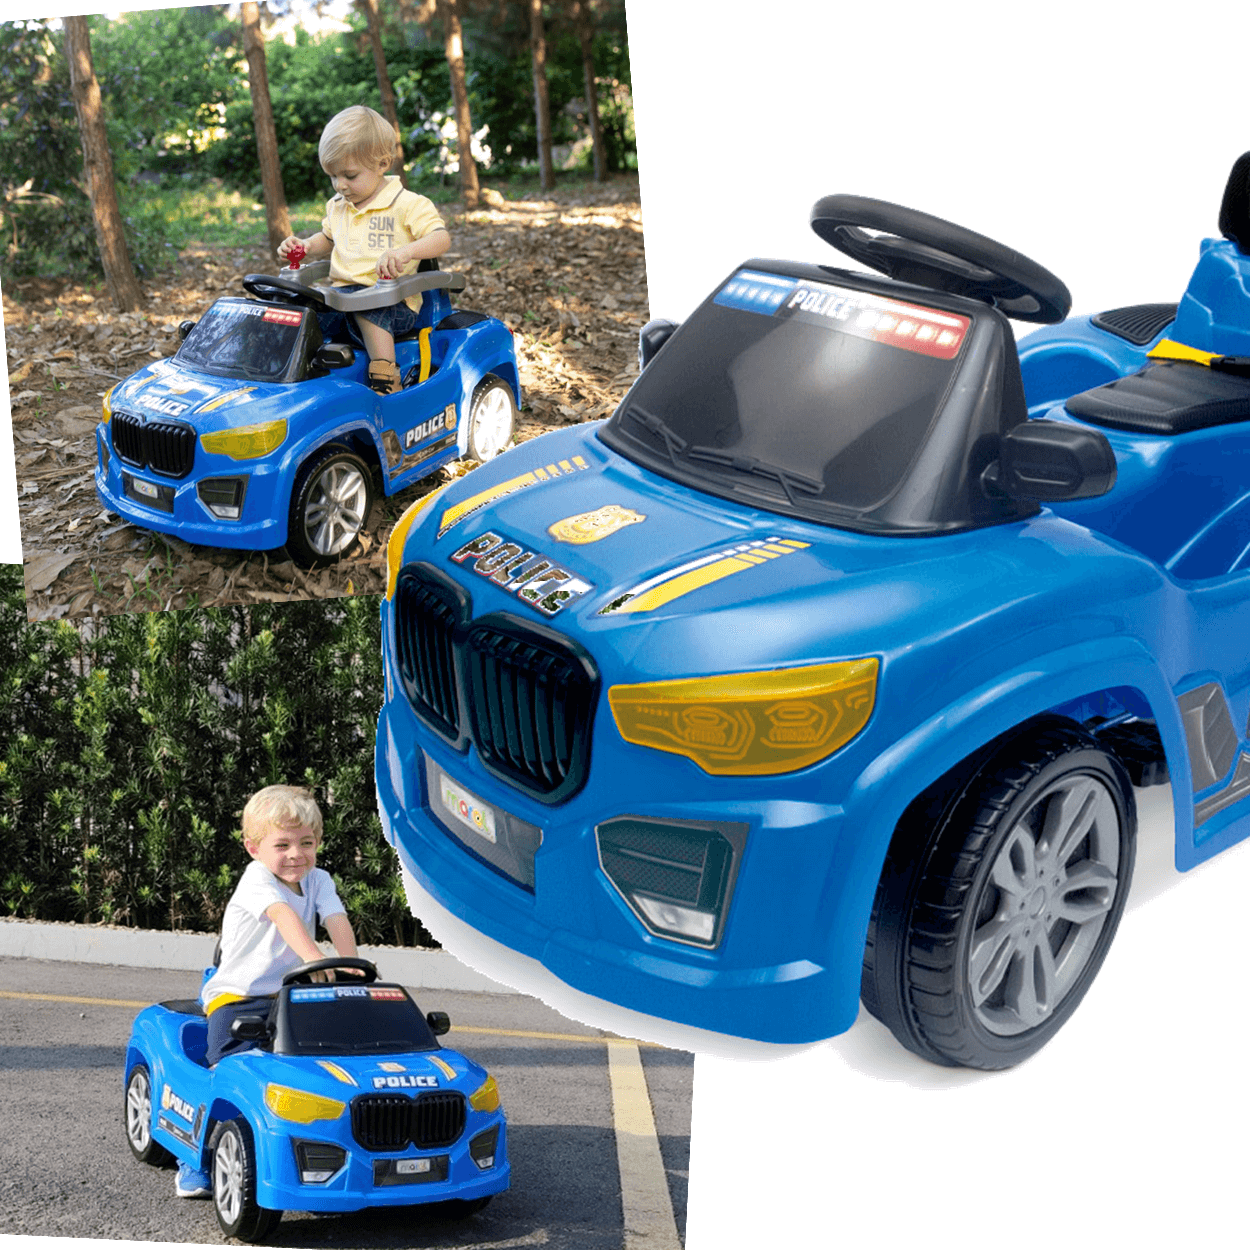 Carrinho de Passeio e Pedal Infantil Maral Bm Car Azul Police - 3